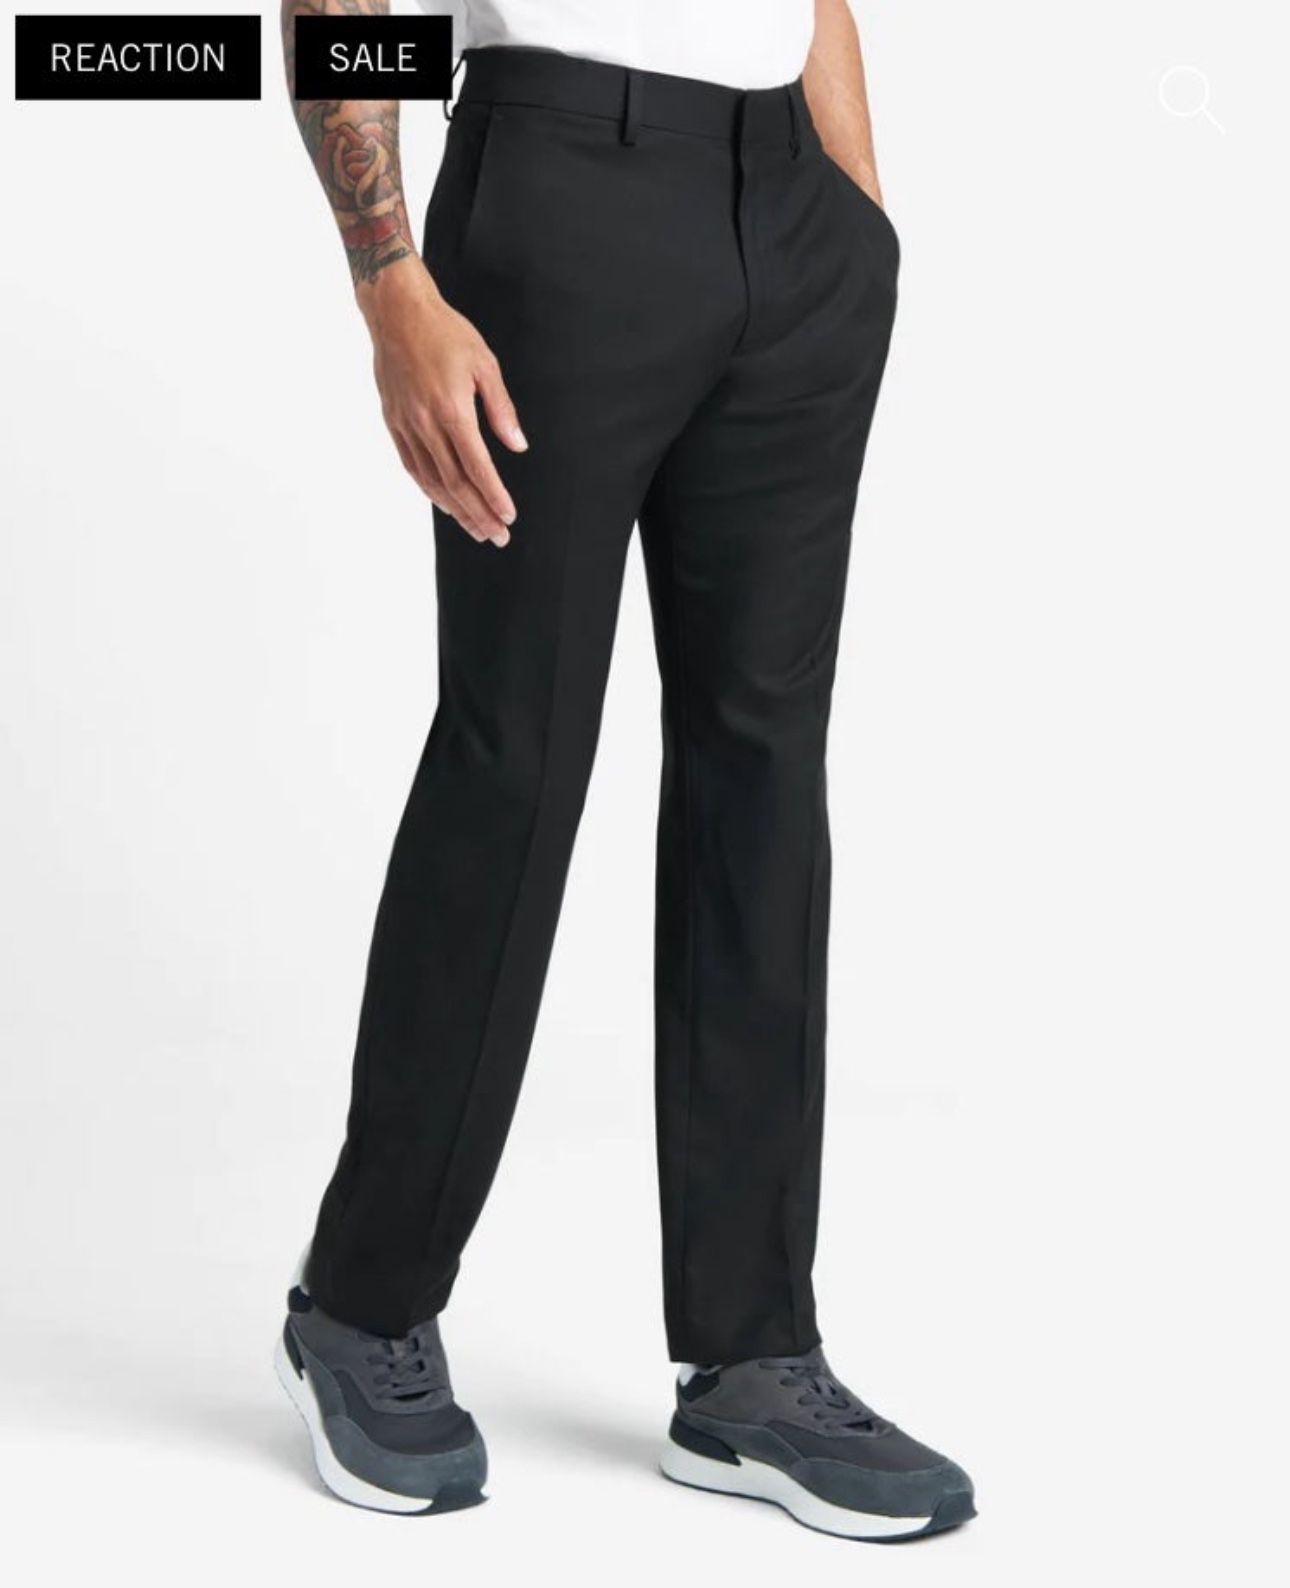 Kenneth Cole Reaction Premium Dress Pant - Black - 34 X 29